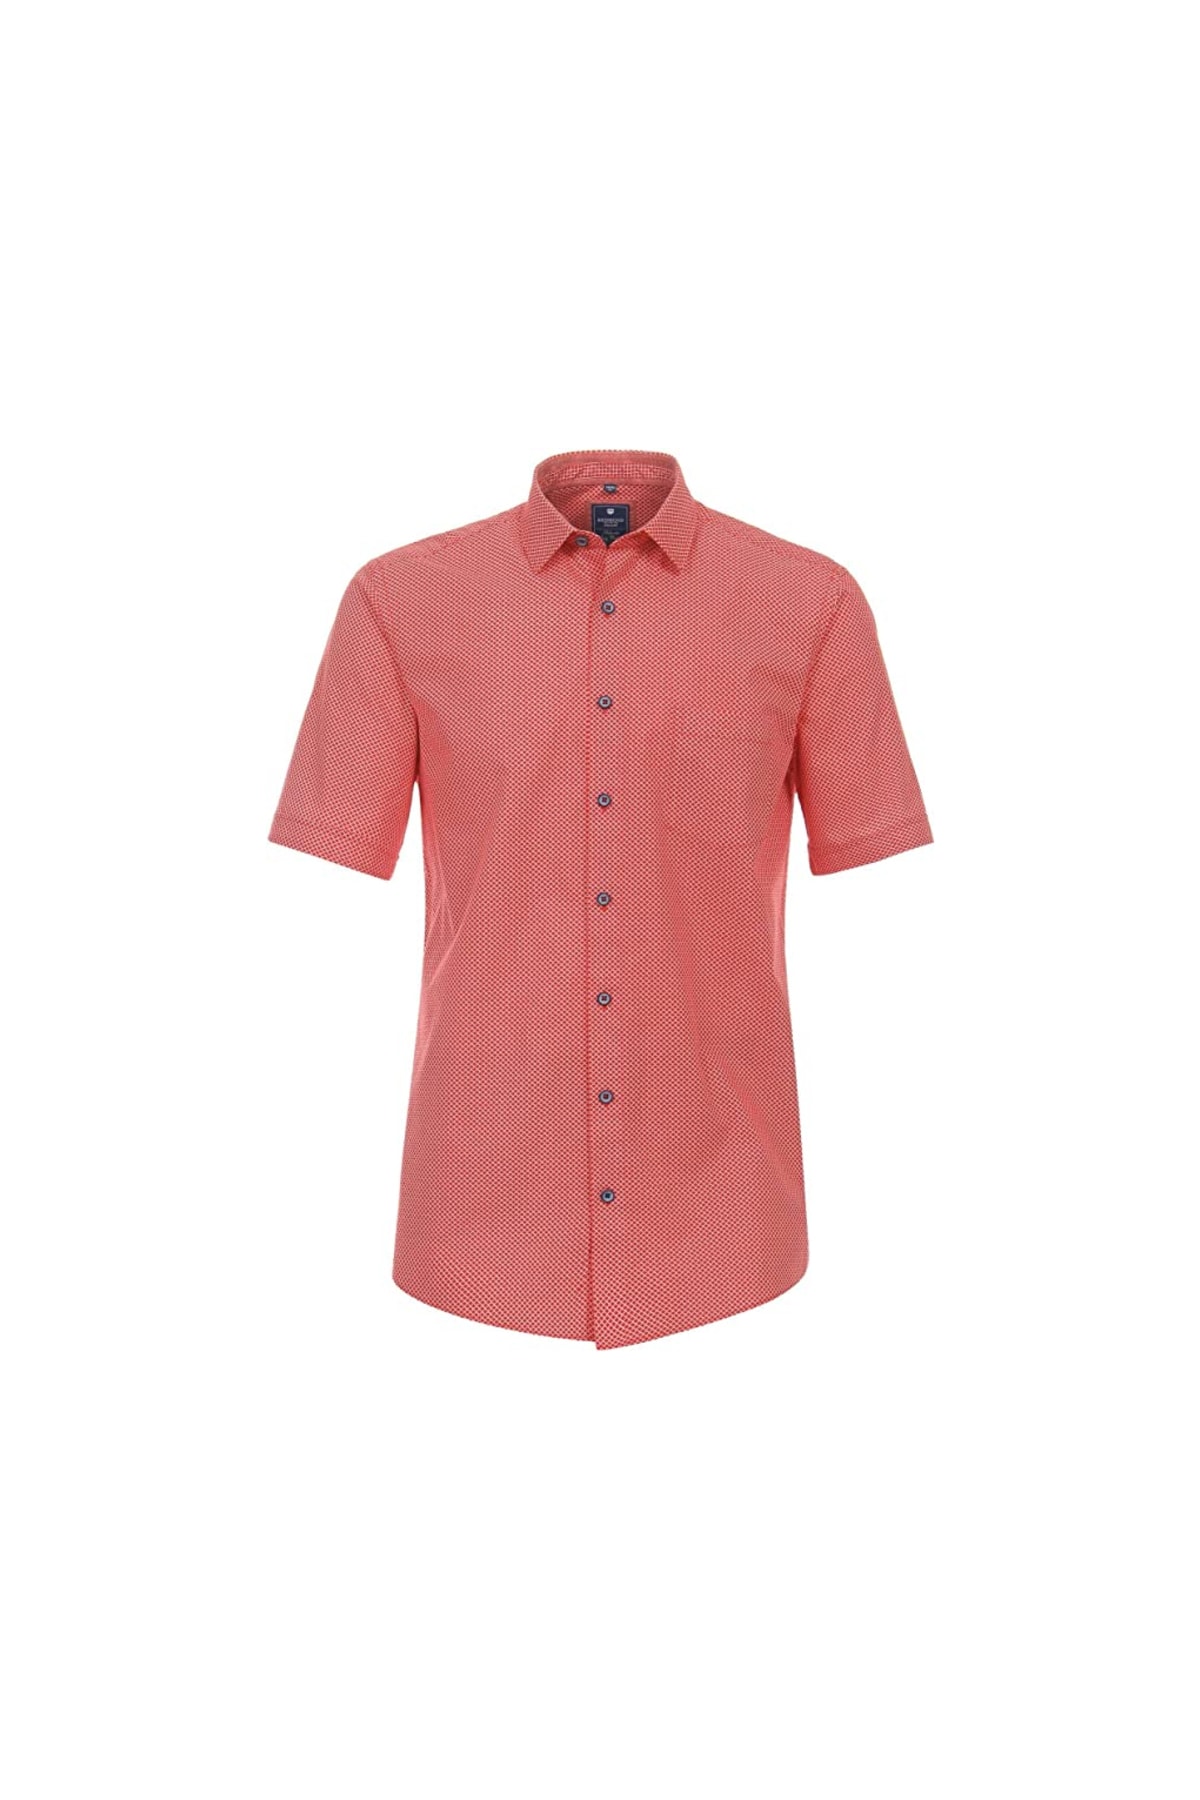 Redmond Hemd Rot Regular Fit Fast ausverkauft